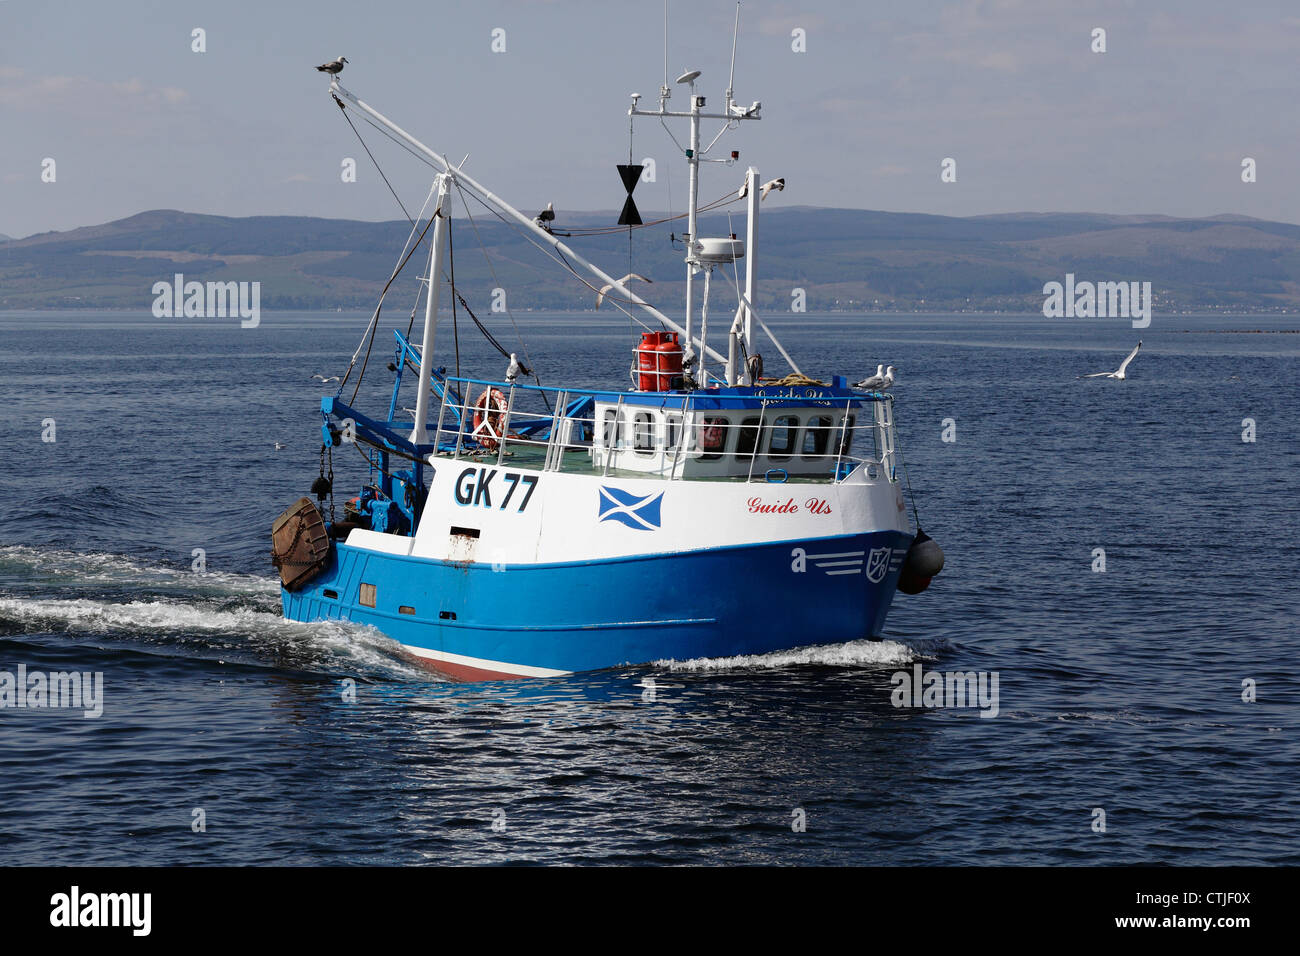 Kleines Fischerboot Guide US Segeln vor Largs in der Firth of Clyde, North Ayrshire, Schottland, Großbritannien Stockfoto